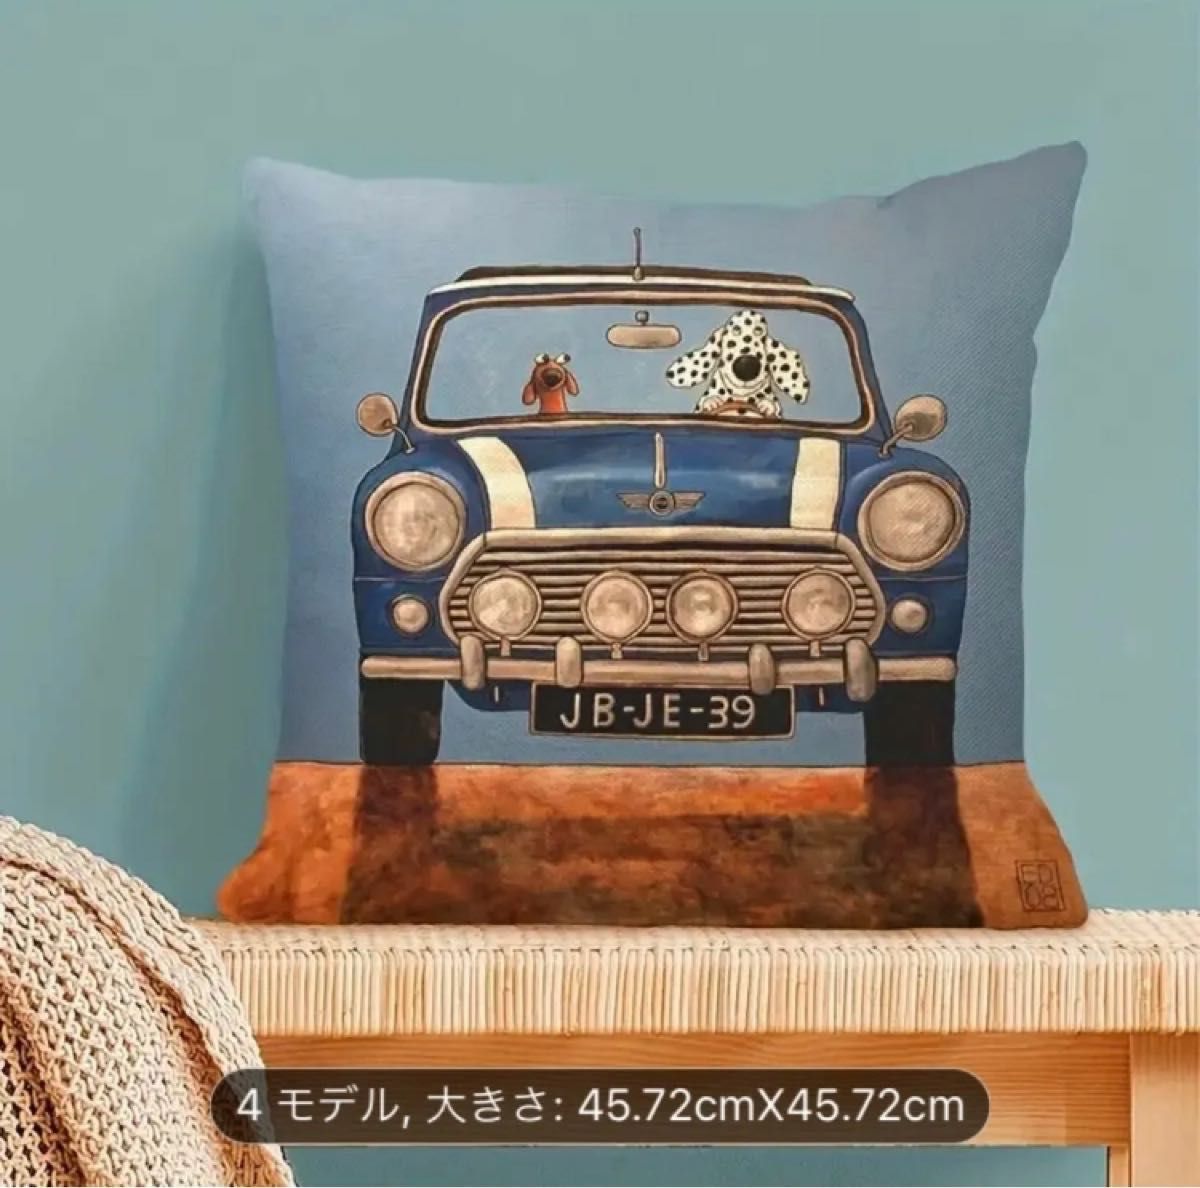 【新品】動物 犬 車 クッションカバー ドライブ 45cm×45cm ダルメシアン ダックスフンド ４枚セット